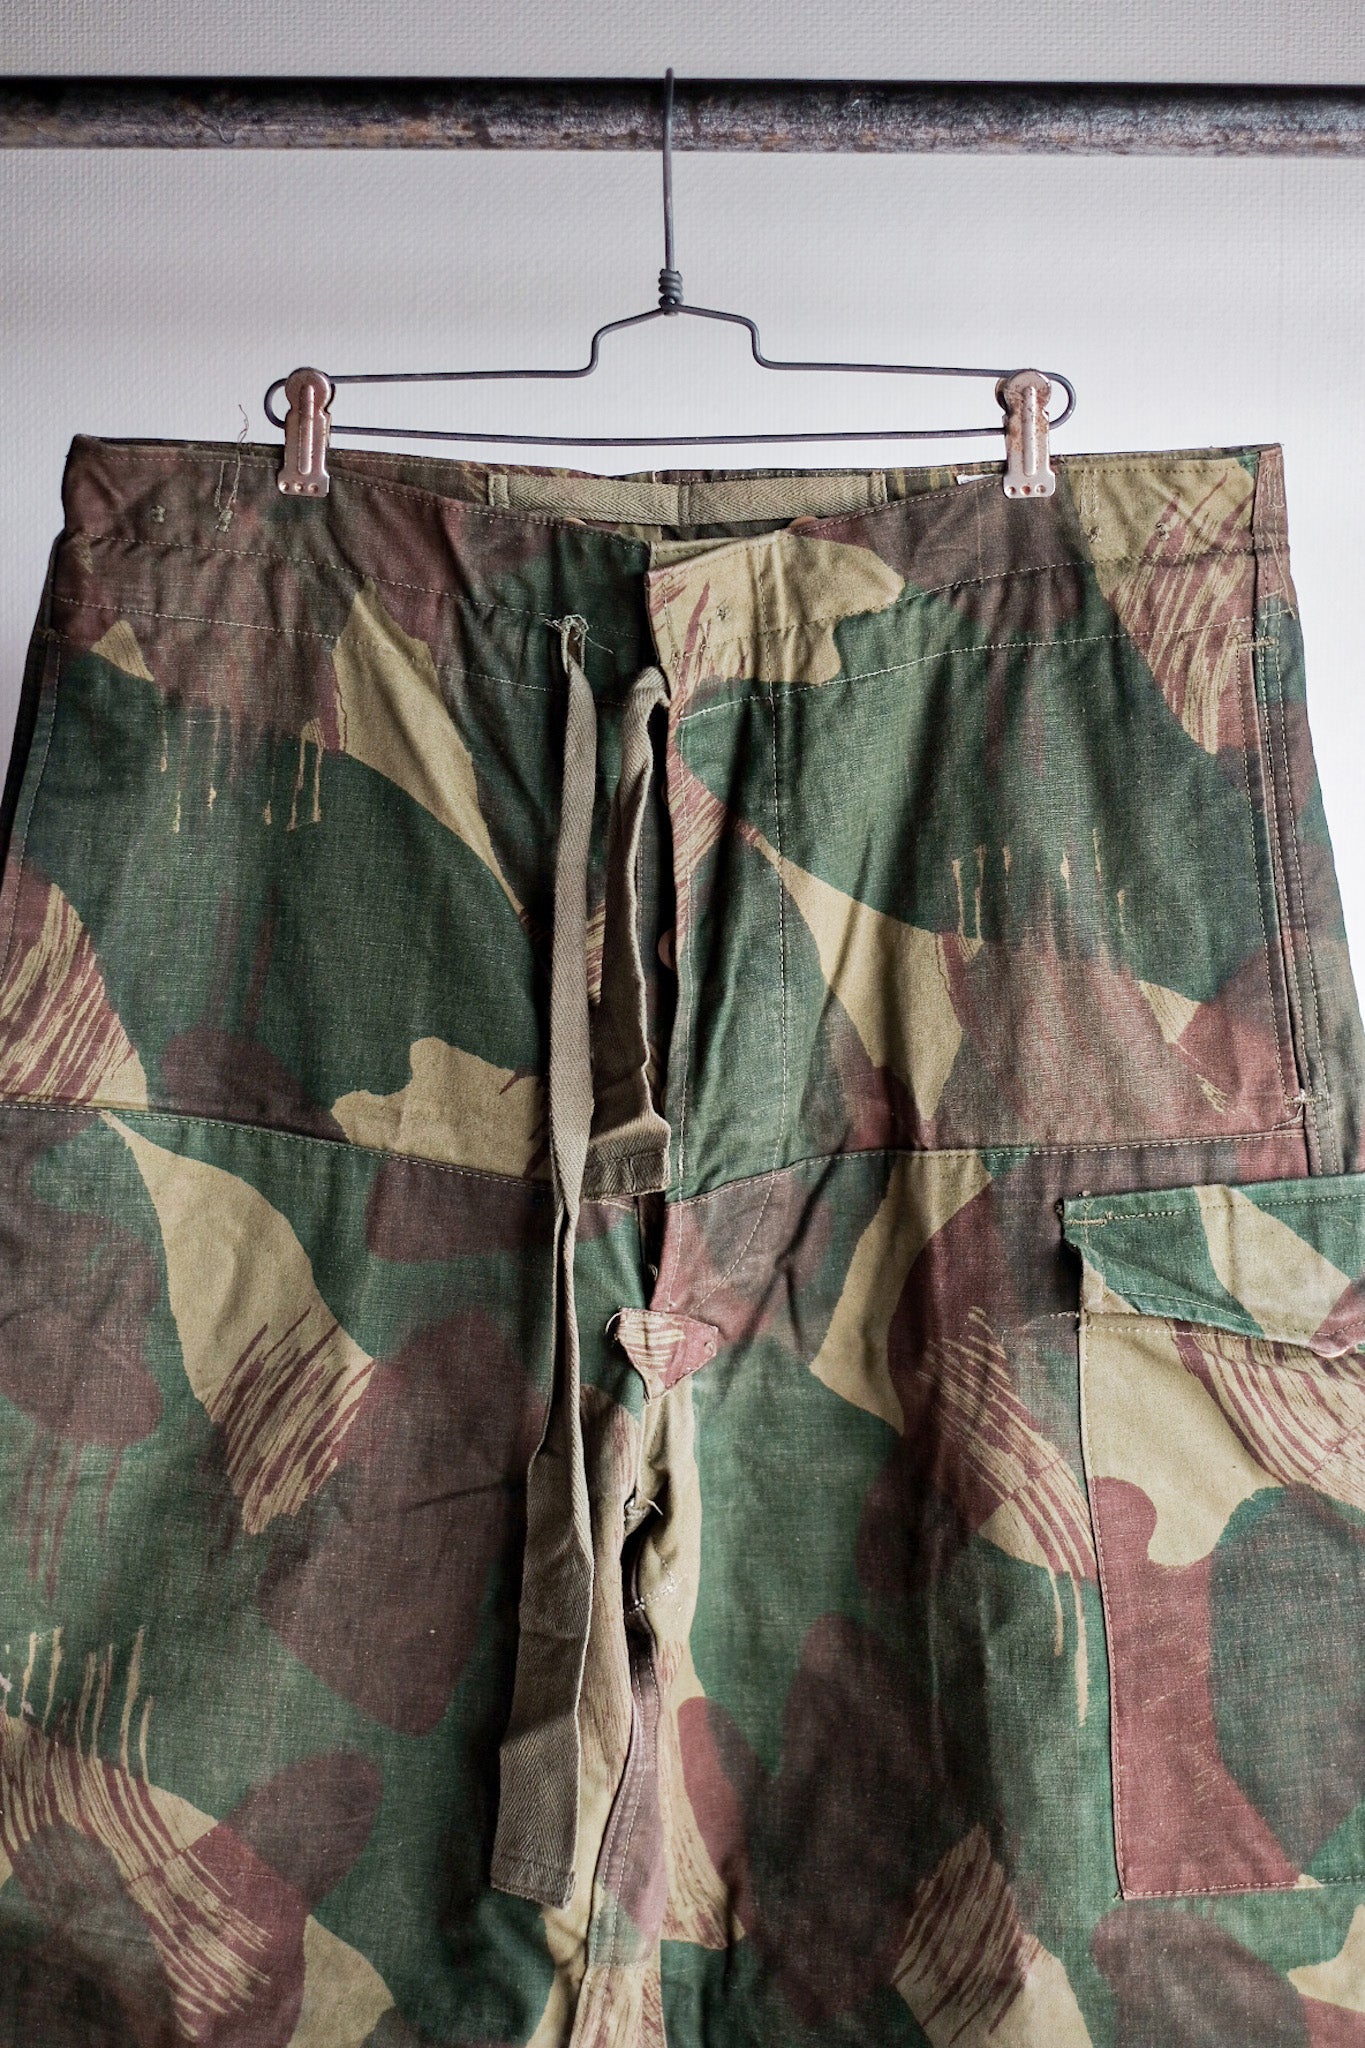 [〜50年代]比利時陸軍筆觸迷彩褲子大小。3